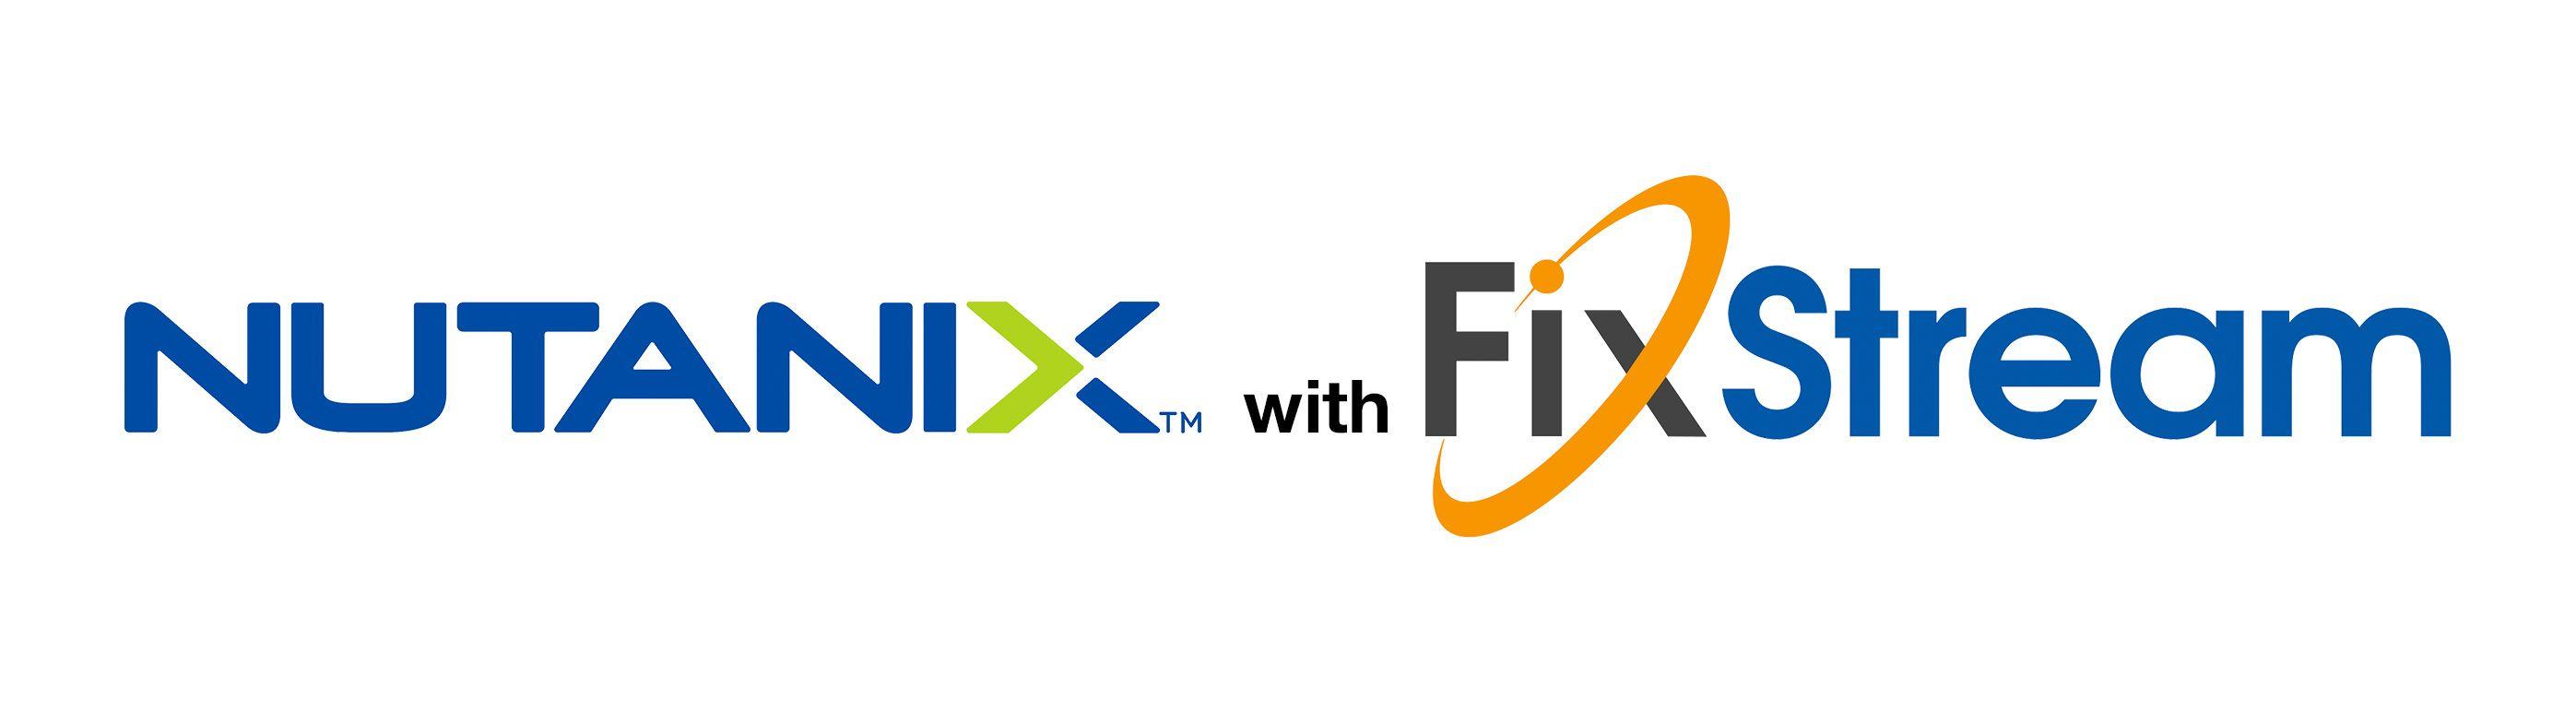 Nutanix Logo - Nutanix With Fixstream Logo 4 FixStream